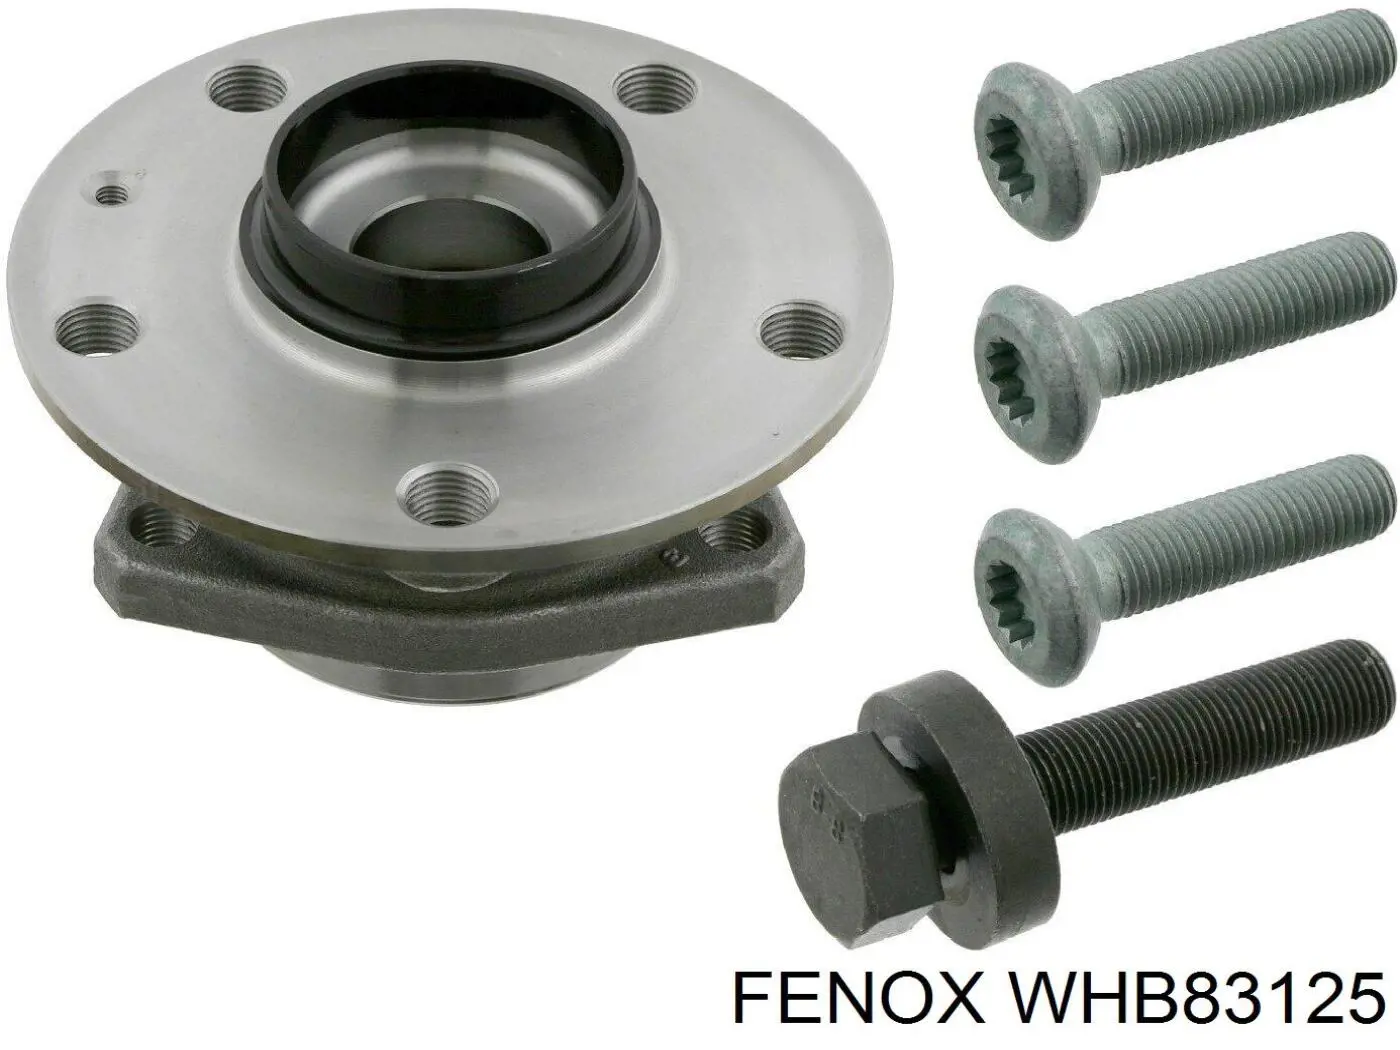 WHB83125 Fenox ступица передняя